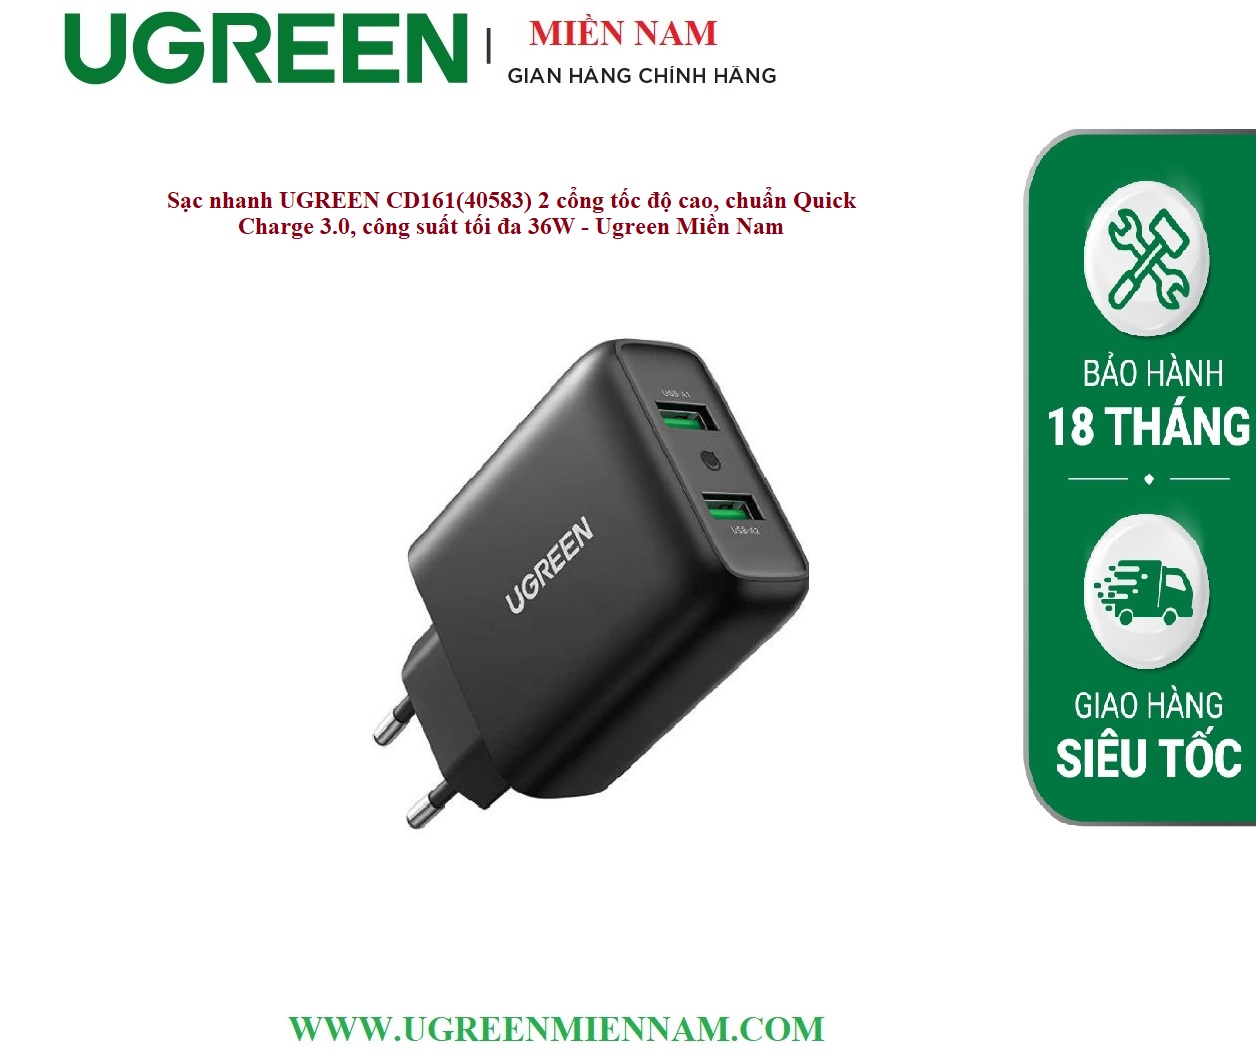 Sạc nhanh UGREEN CD161(40583) 2 cổng tốc độ cao, chuẩn Quick Charge 3.0, công suất tối đa 36W - Ugreen Miền Nam